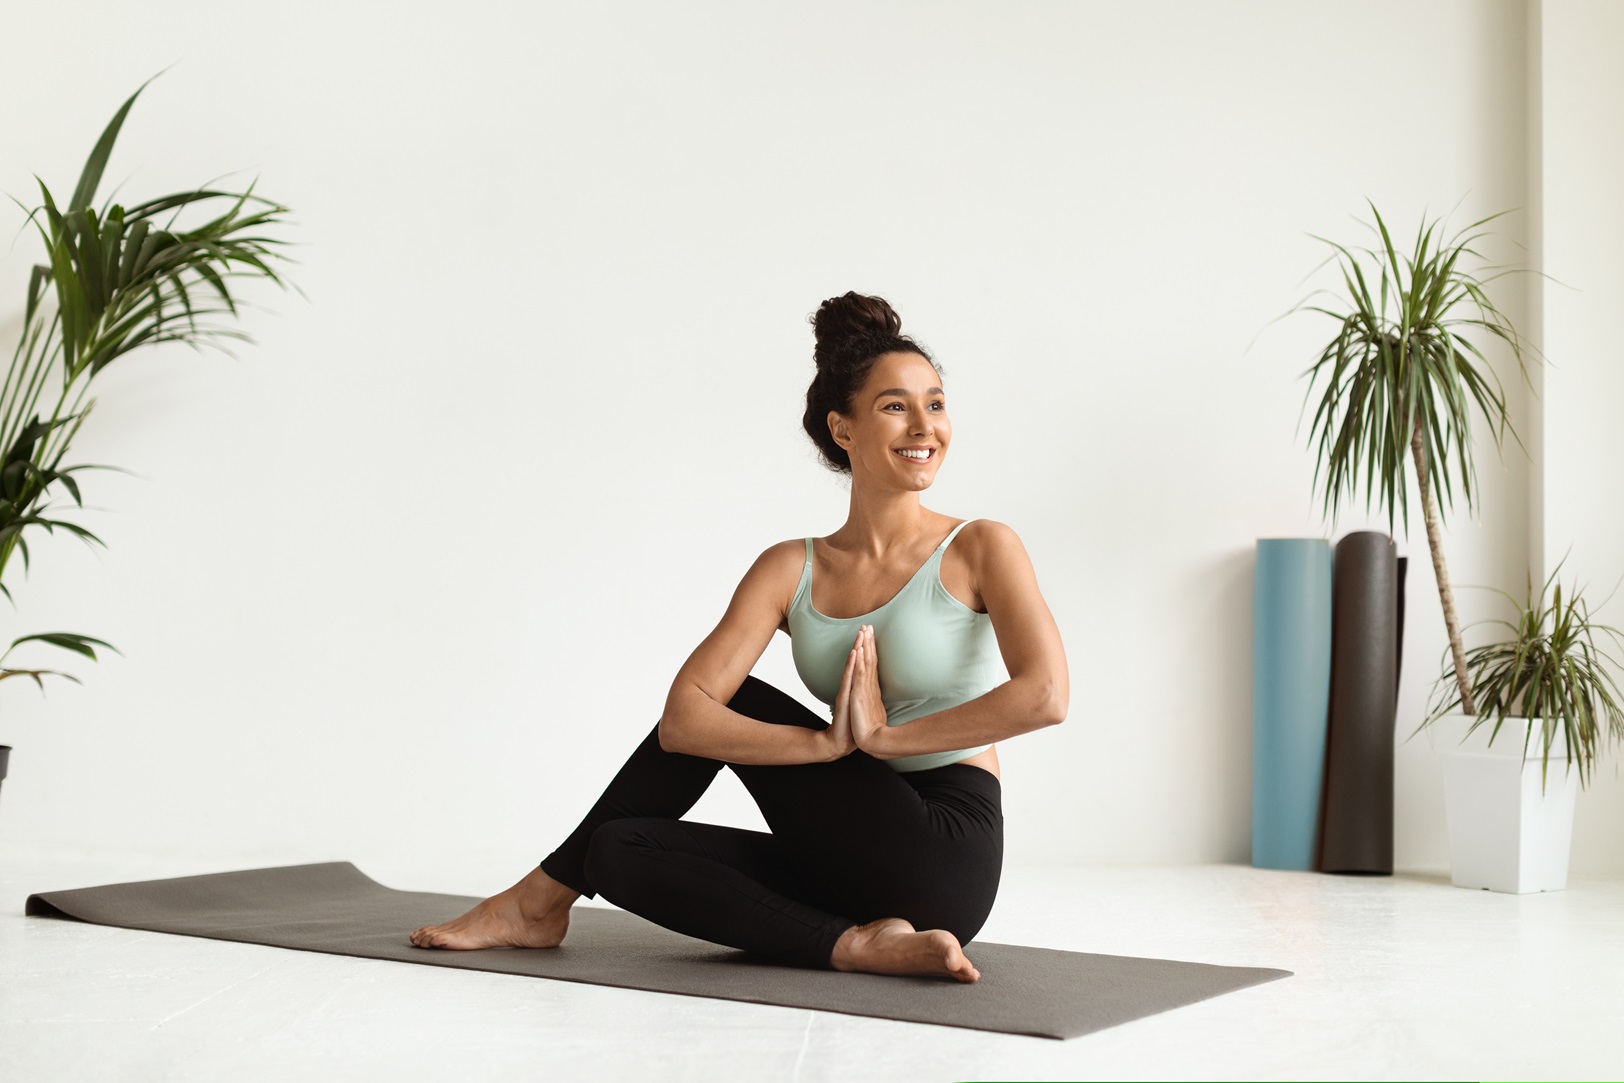 Saiba quais os benefícios do yoga para o corpo e para a mente!